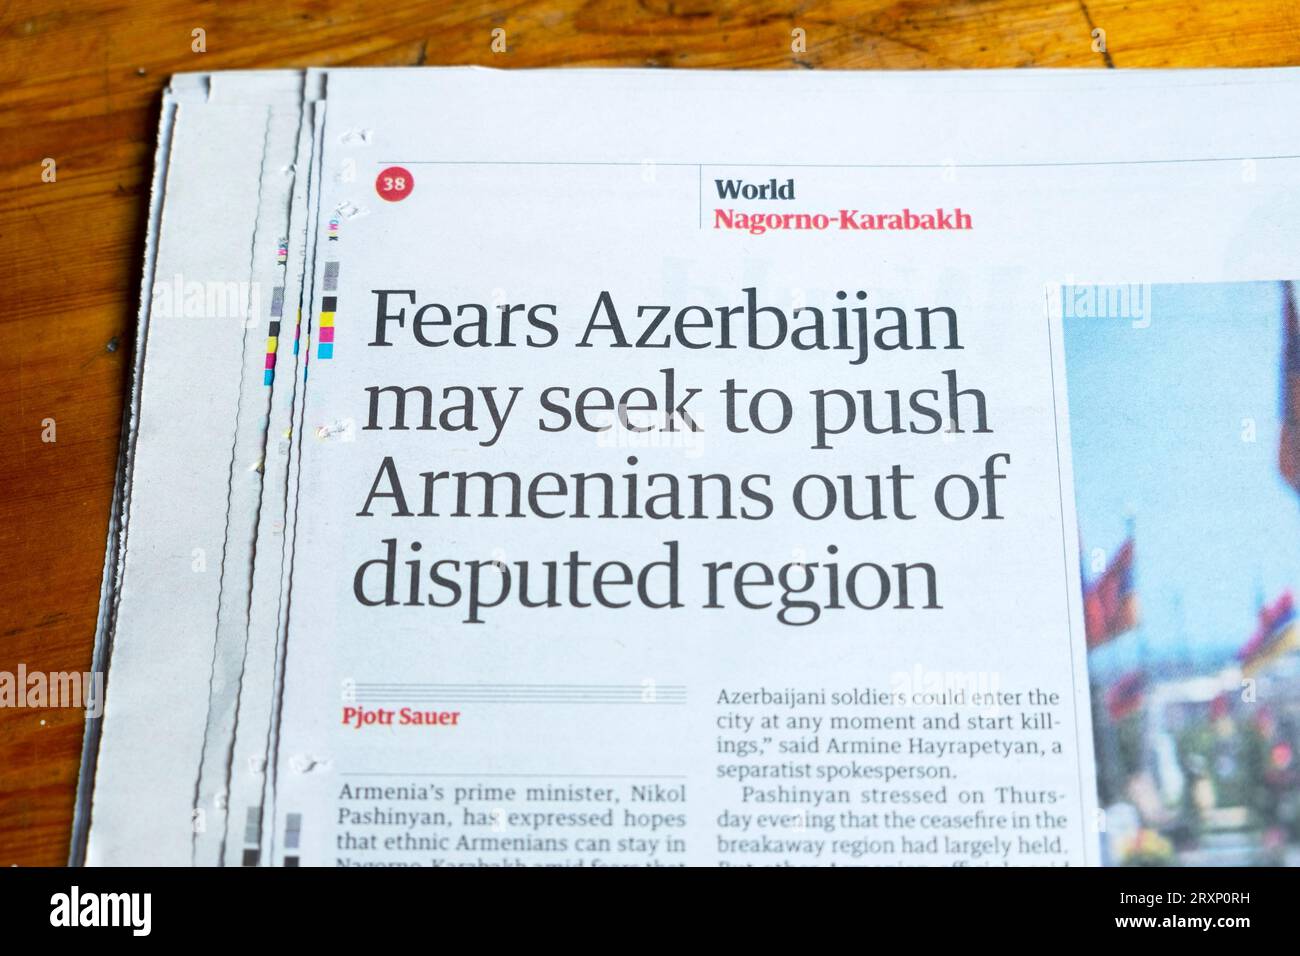 "I timori dell'Azerbaigian possono cercare di spingere gli armeni fuori dalla regione contesa" titolo del quotidiano Guardian pulizia etnica articolo 23 settembre 2023 Londra Regno Unito Foto Stock